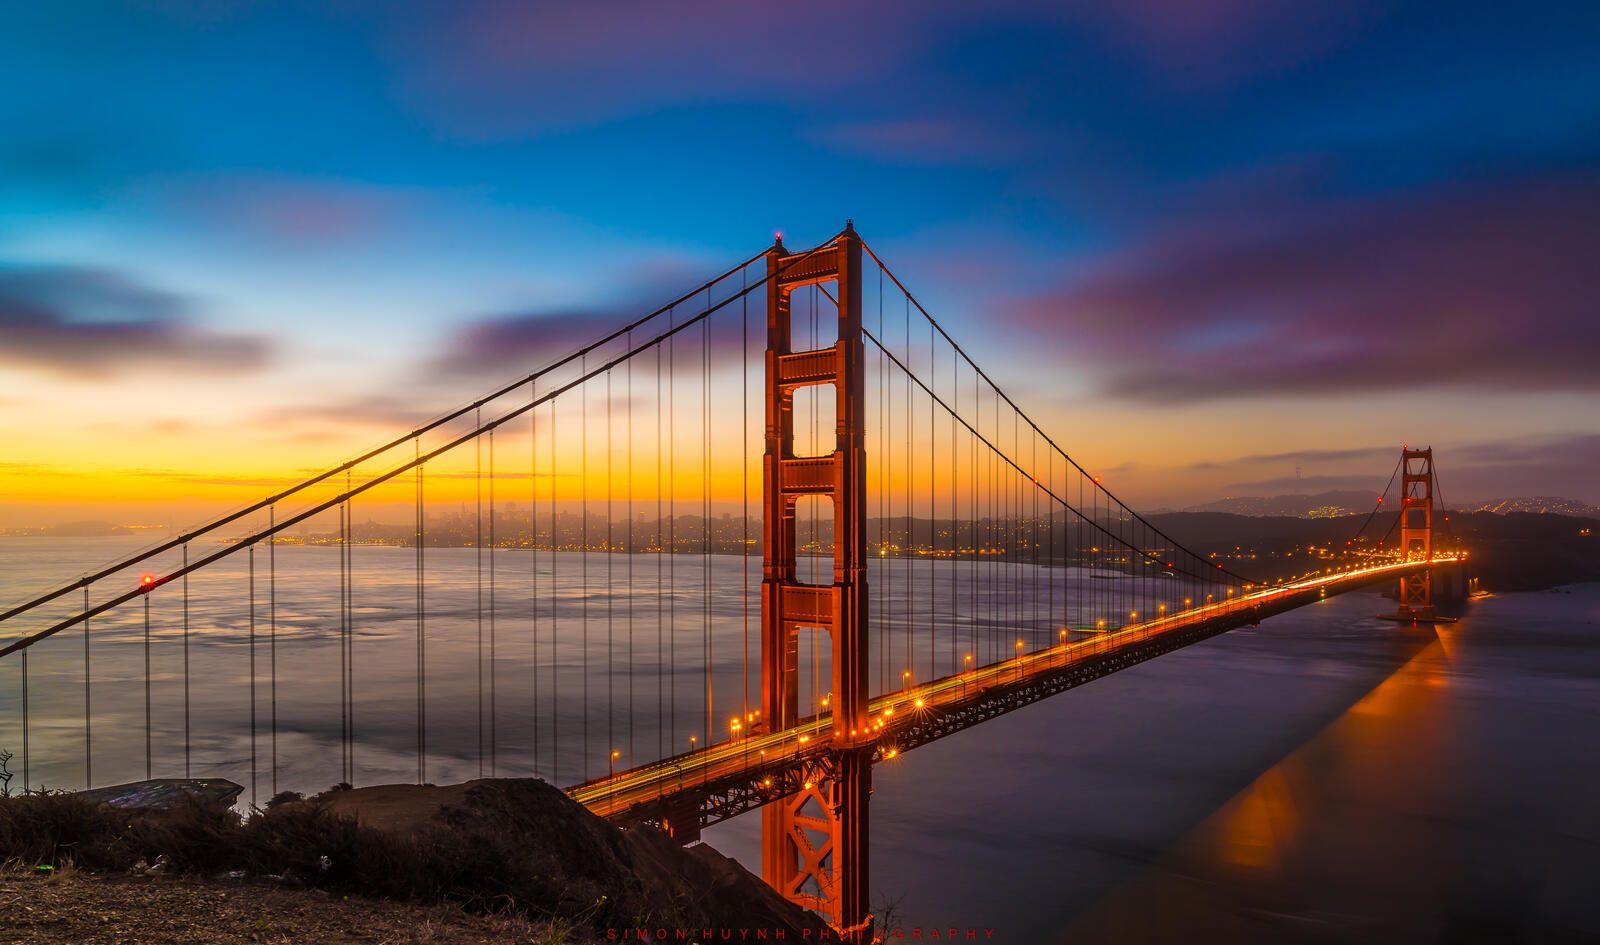 Бесплатное фото Golden Gate Bridge в San Francisco